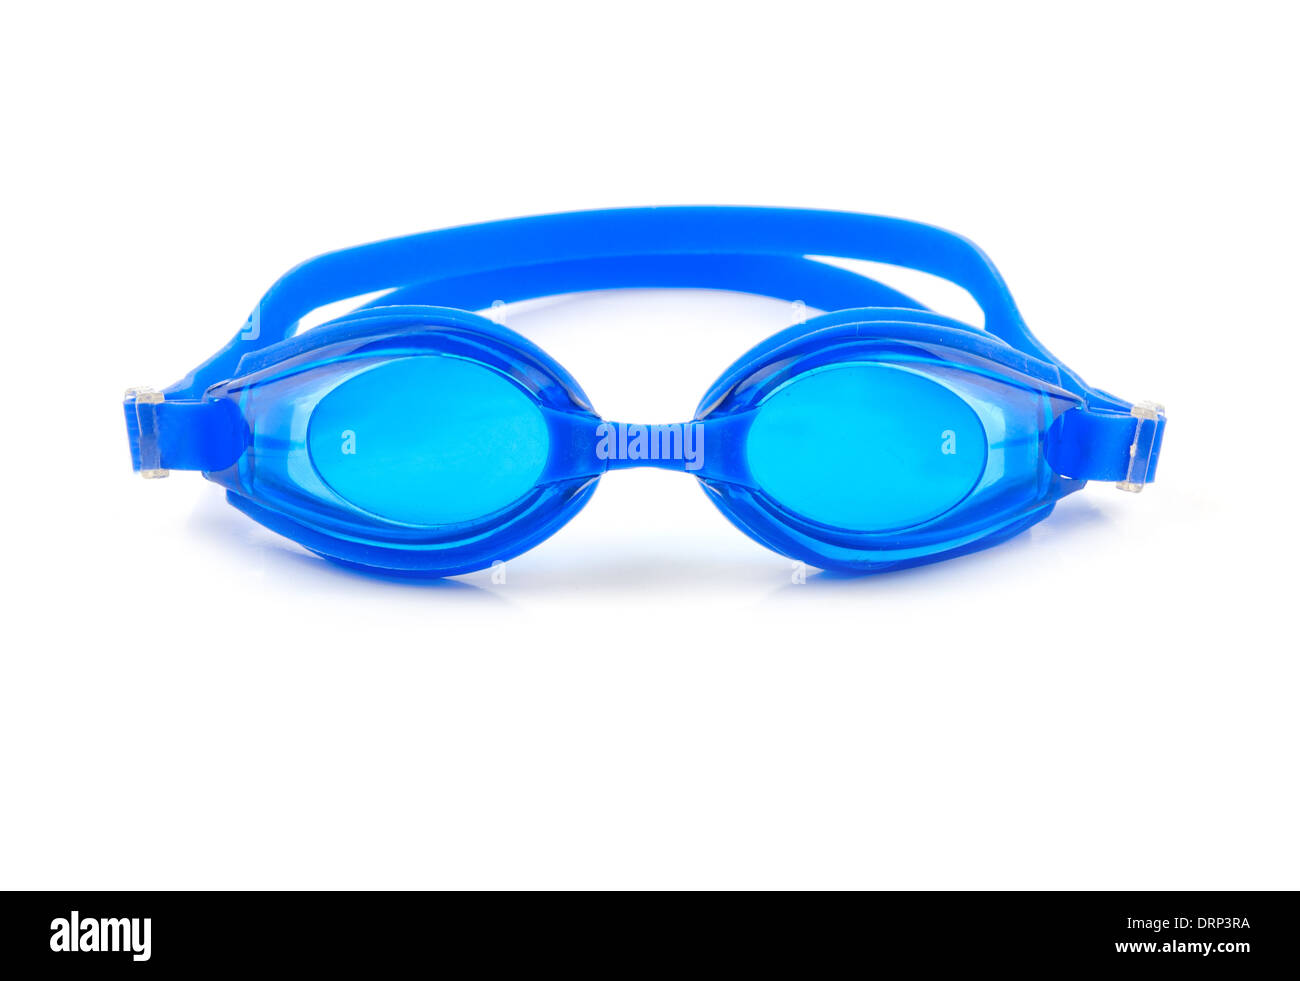 Occhiali di protezione blu per nuotare su sfondo bianco Foto Stock